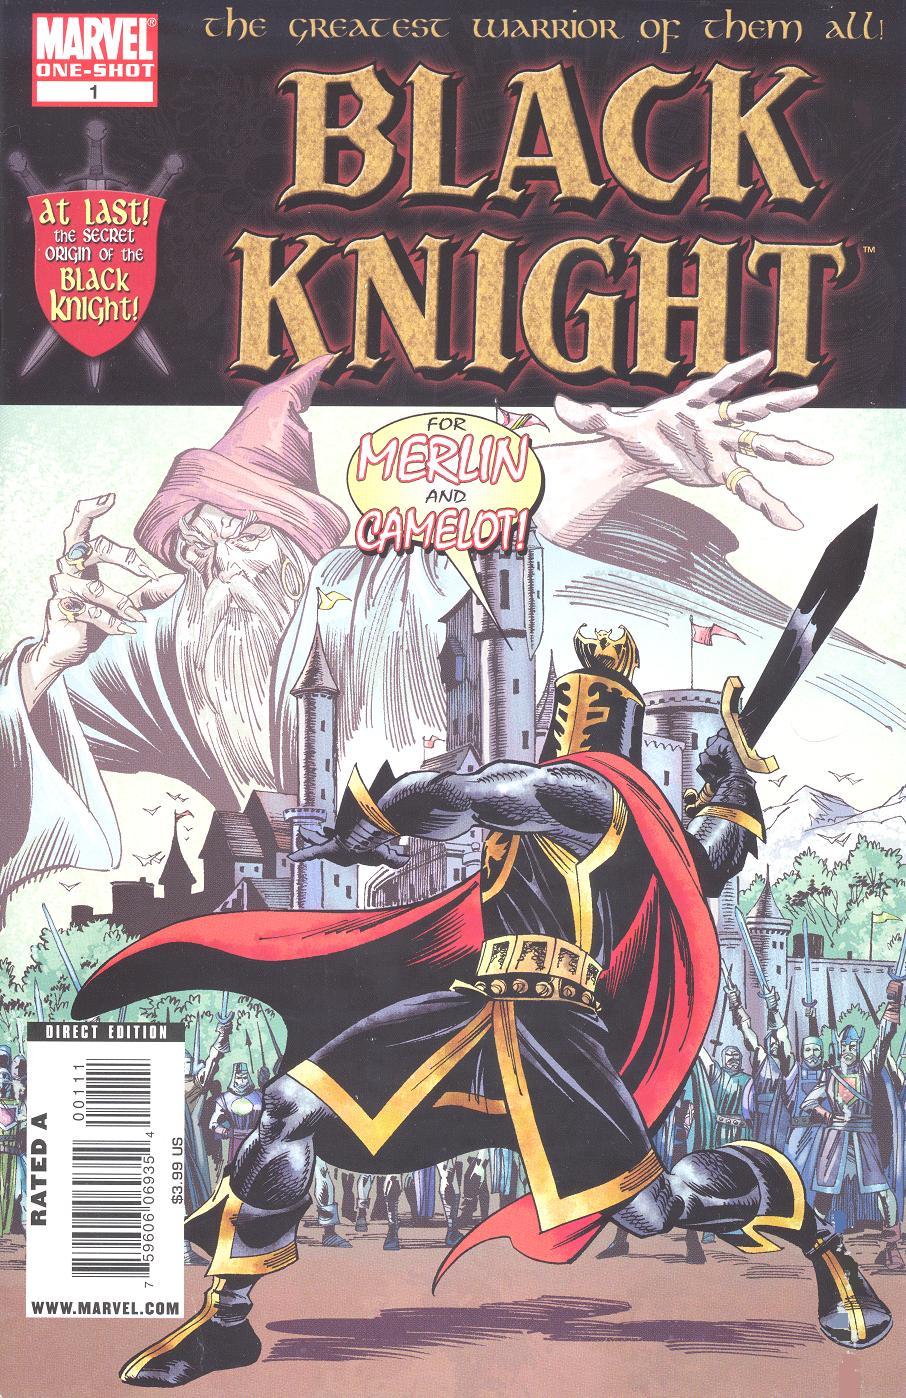 Black Knight Vol. 3 #1